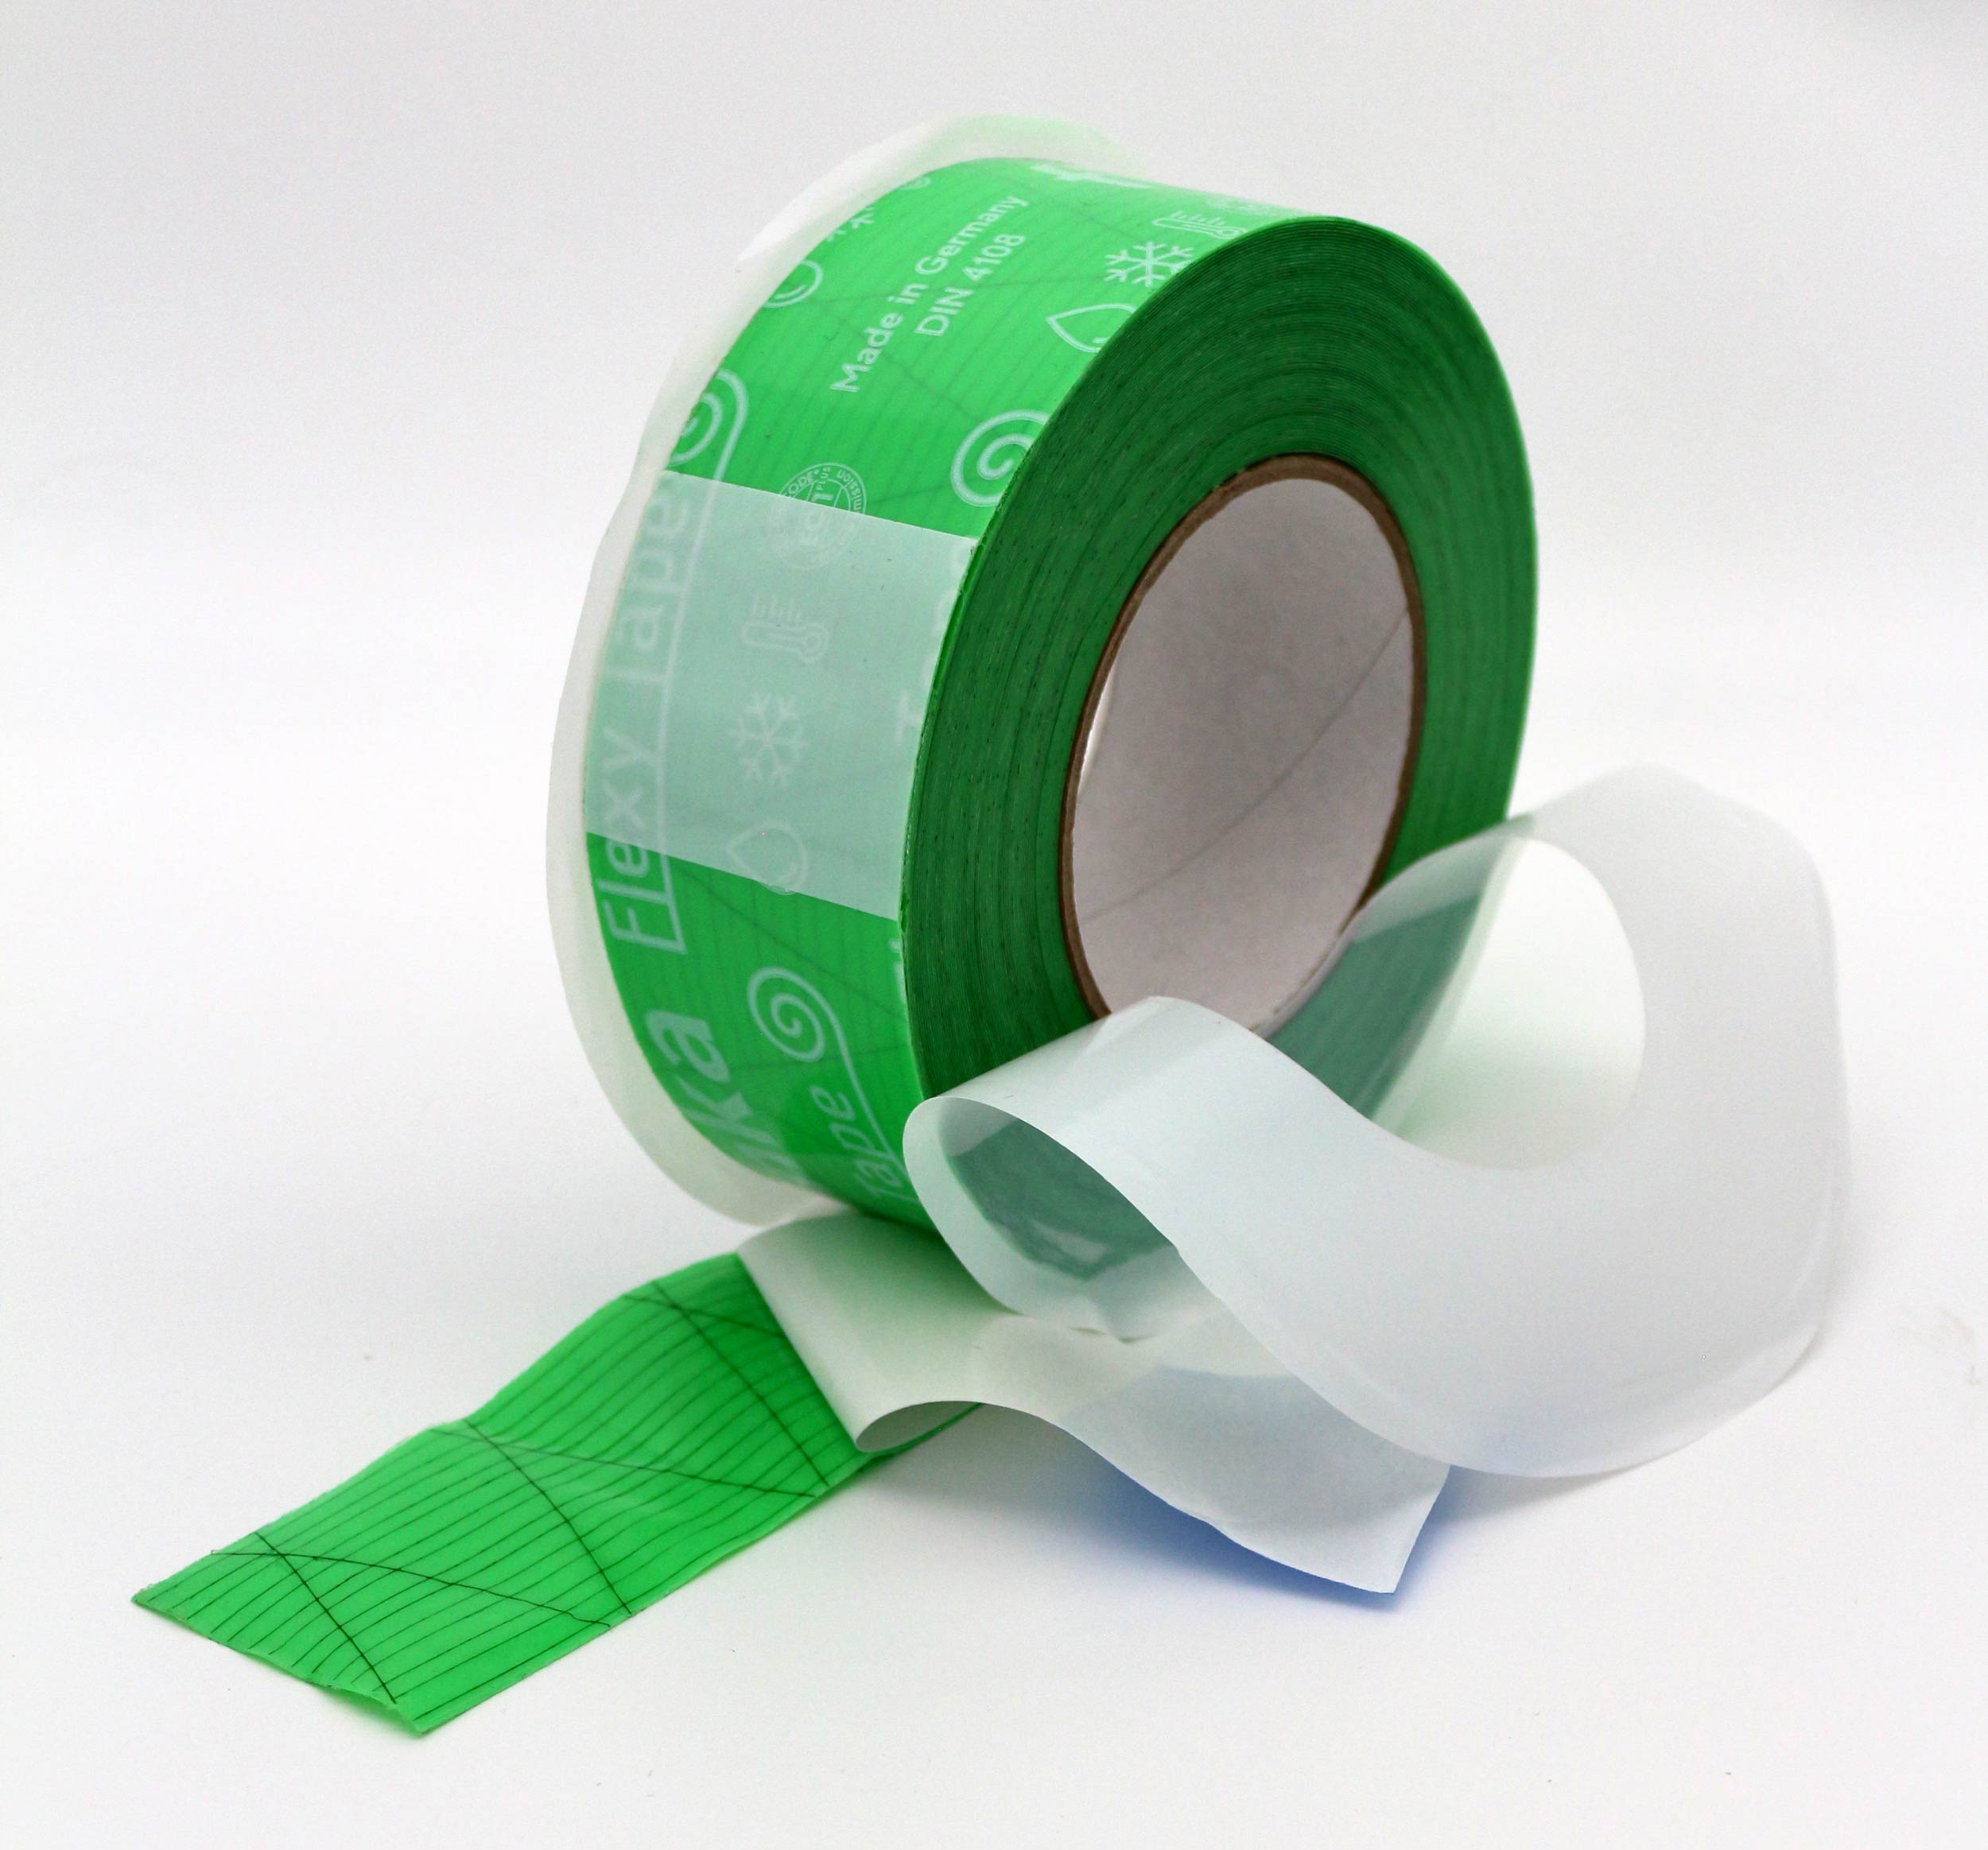 Finka Flexy Tape 50мм x 25м односторонняя соединительная лента скотч для гидроизоляции, пароизоляции и ветрозащиты